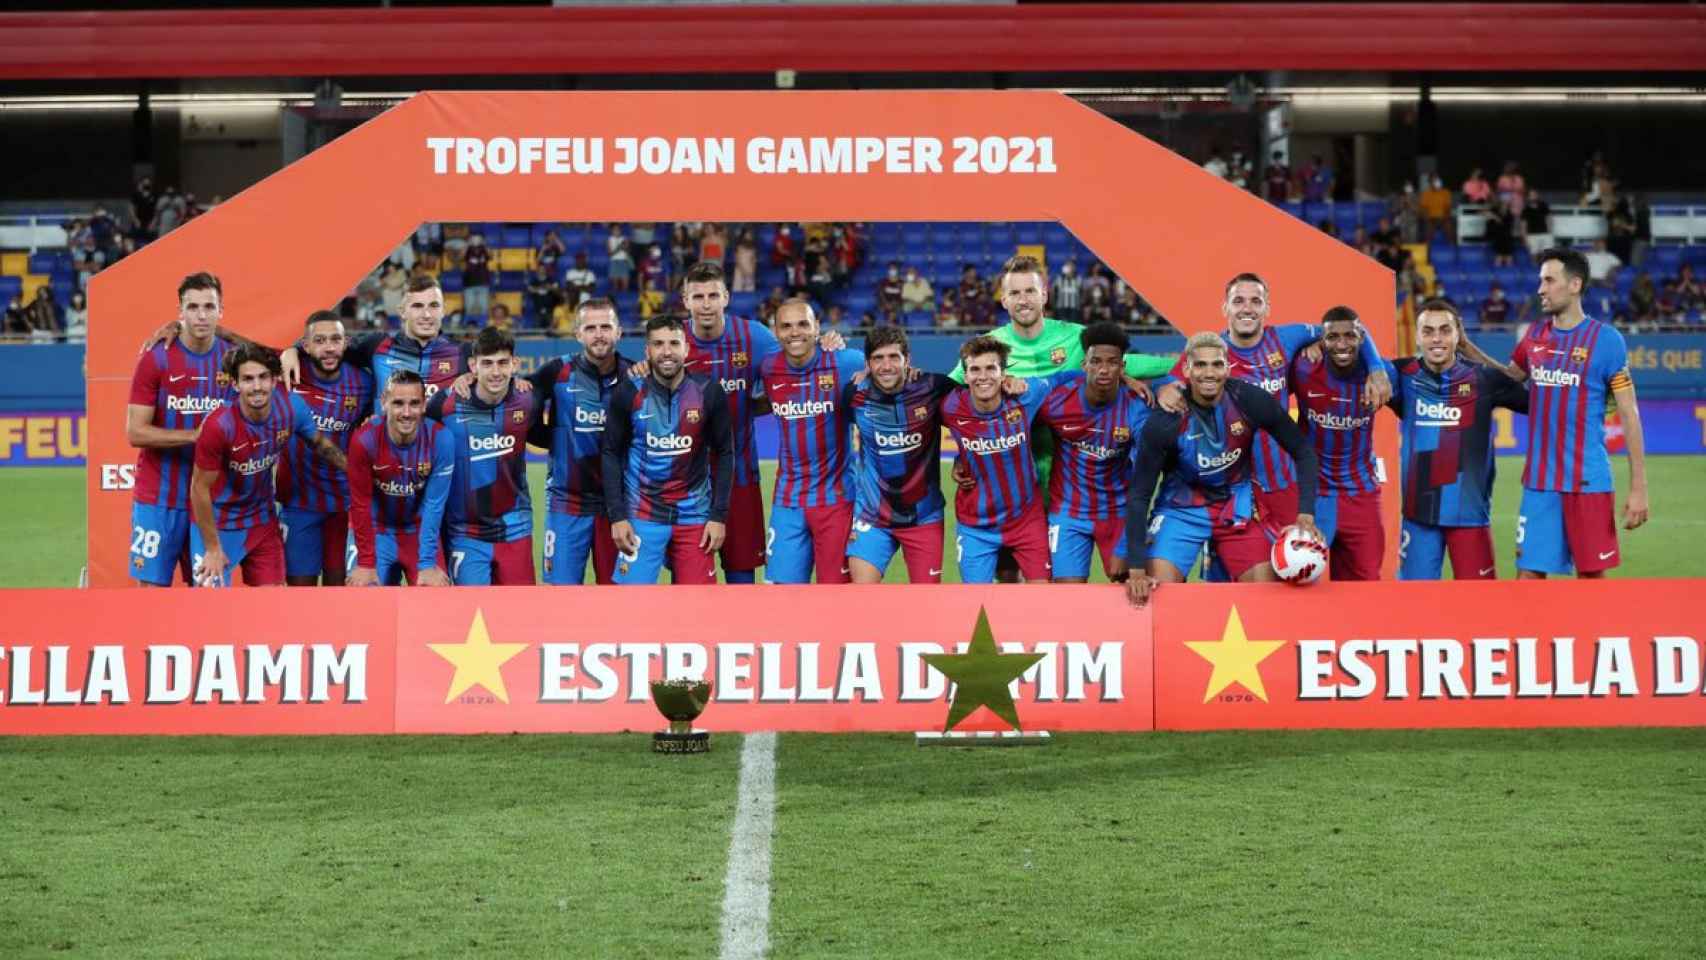 La plantilla del Barça posa con el trofeo Joan Gamper, incluidos los capitanes, tras la presentación oficial de la temporada / FCB